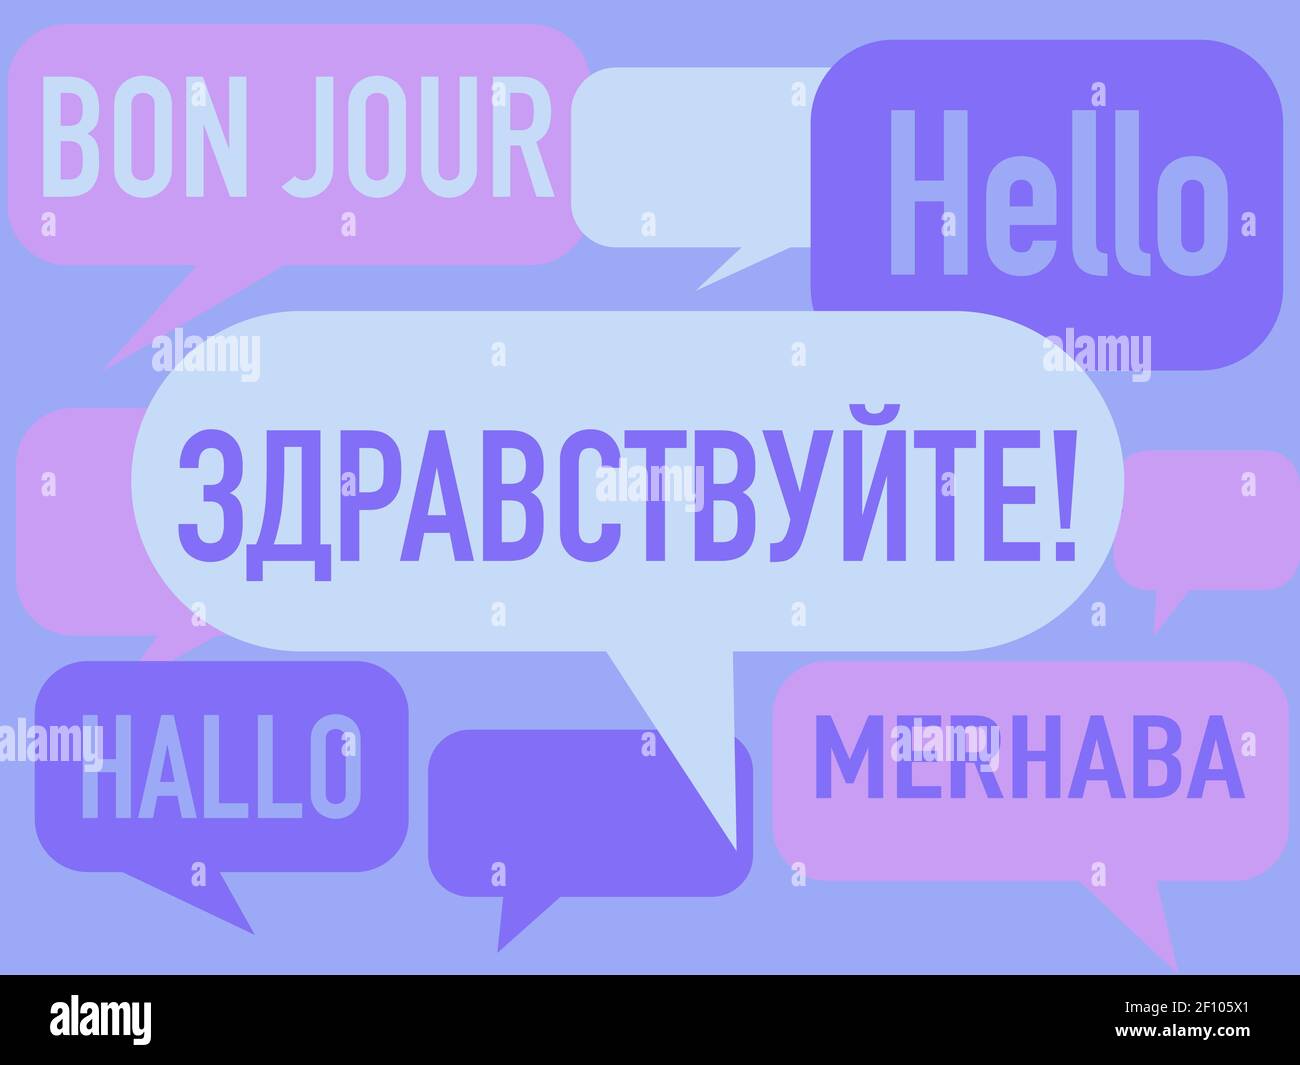 Russisch Sprachkurse Konzept Illustration. Übersetzung von links nach rechts: Wort 'Hello' in französischer, deutscher, russischer, türkischer und englischer Sprache. Stock Vektor